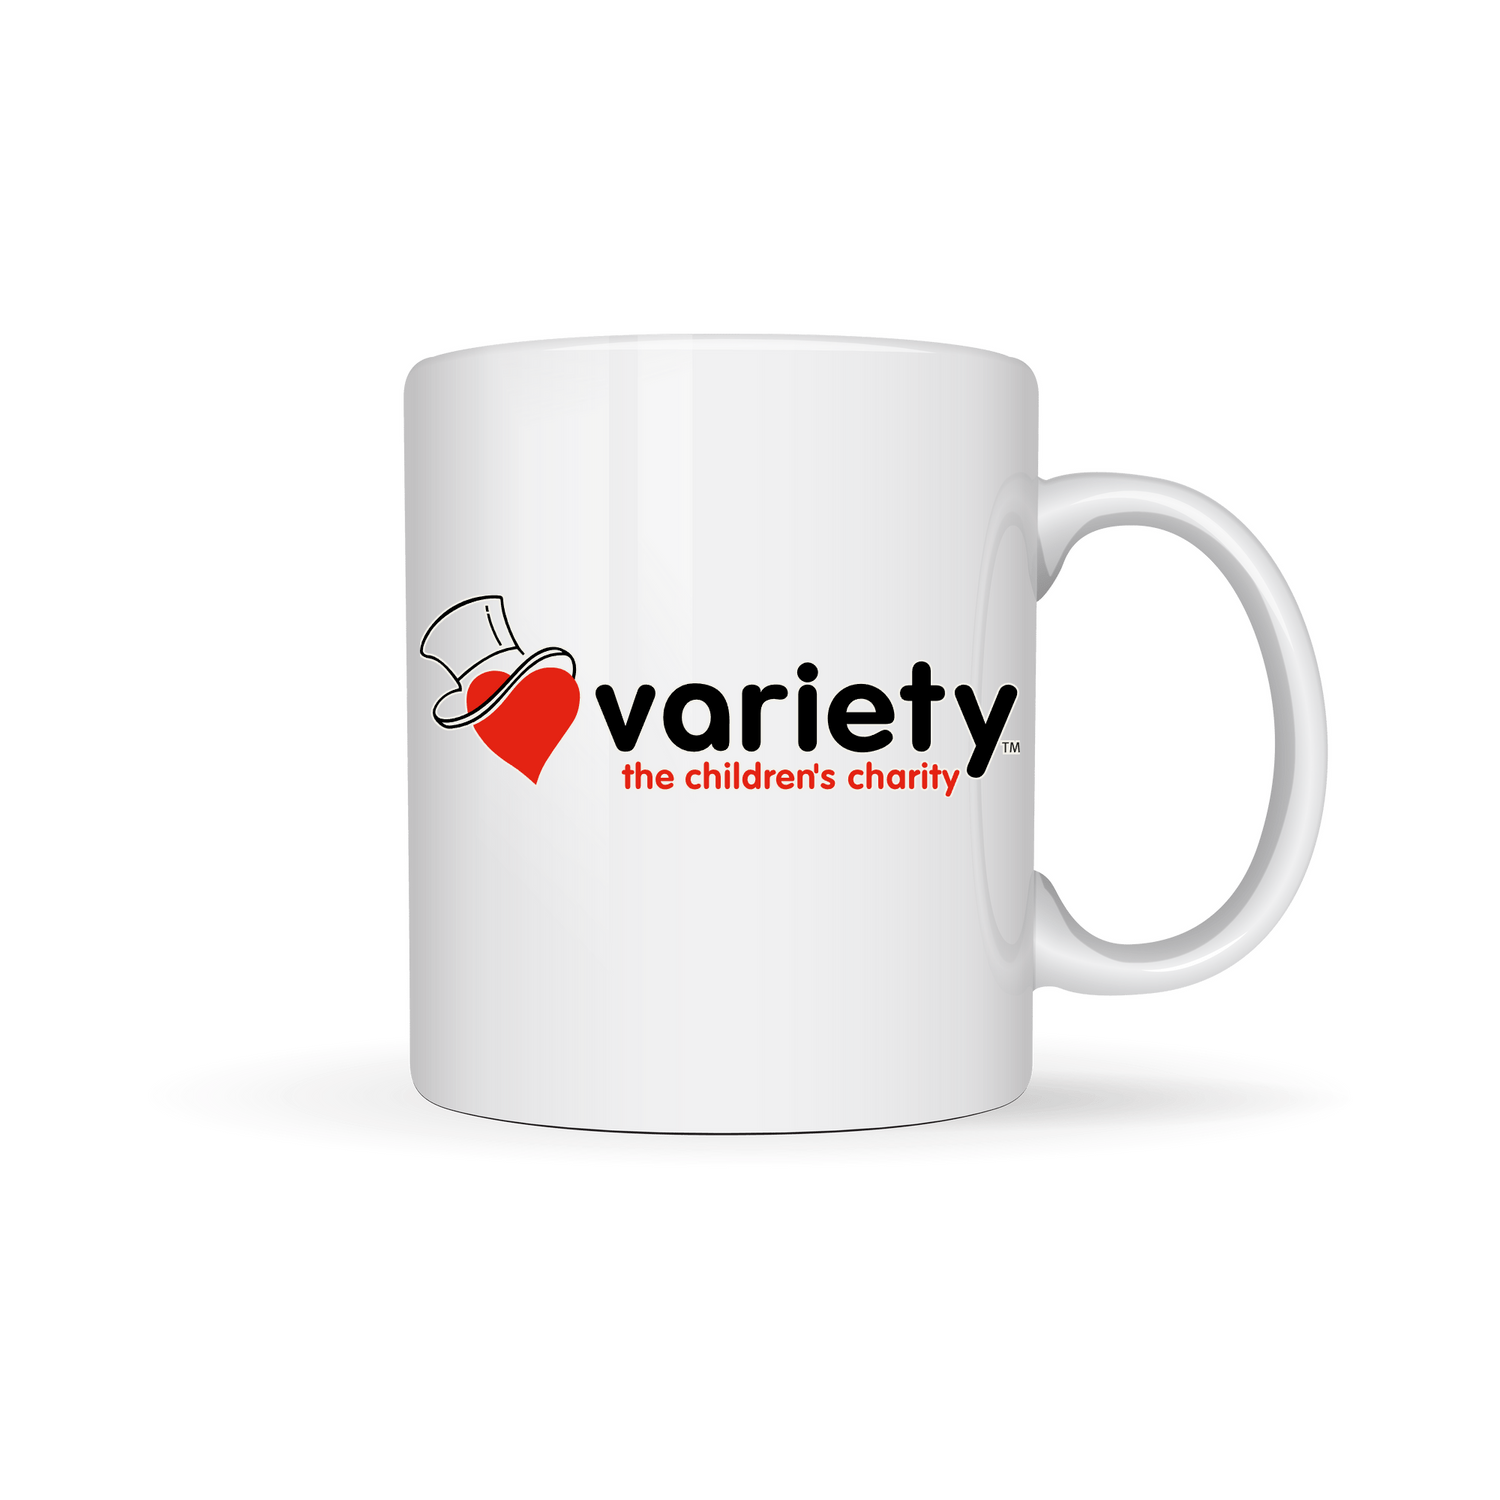 Variety mug